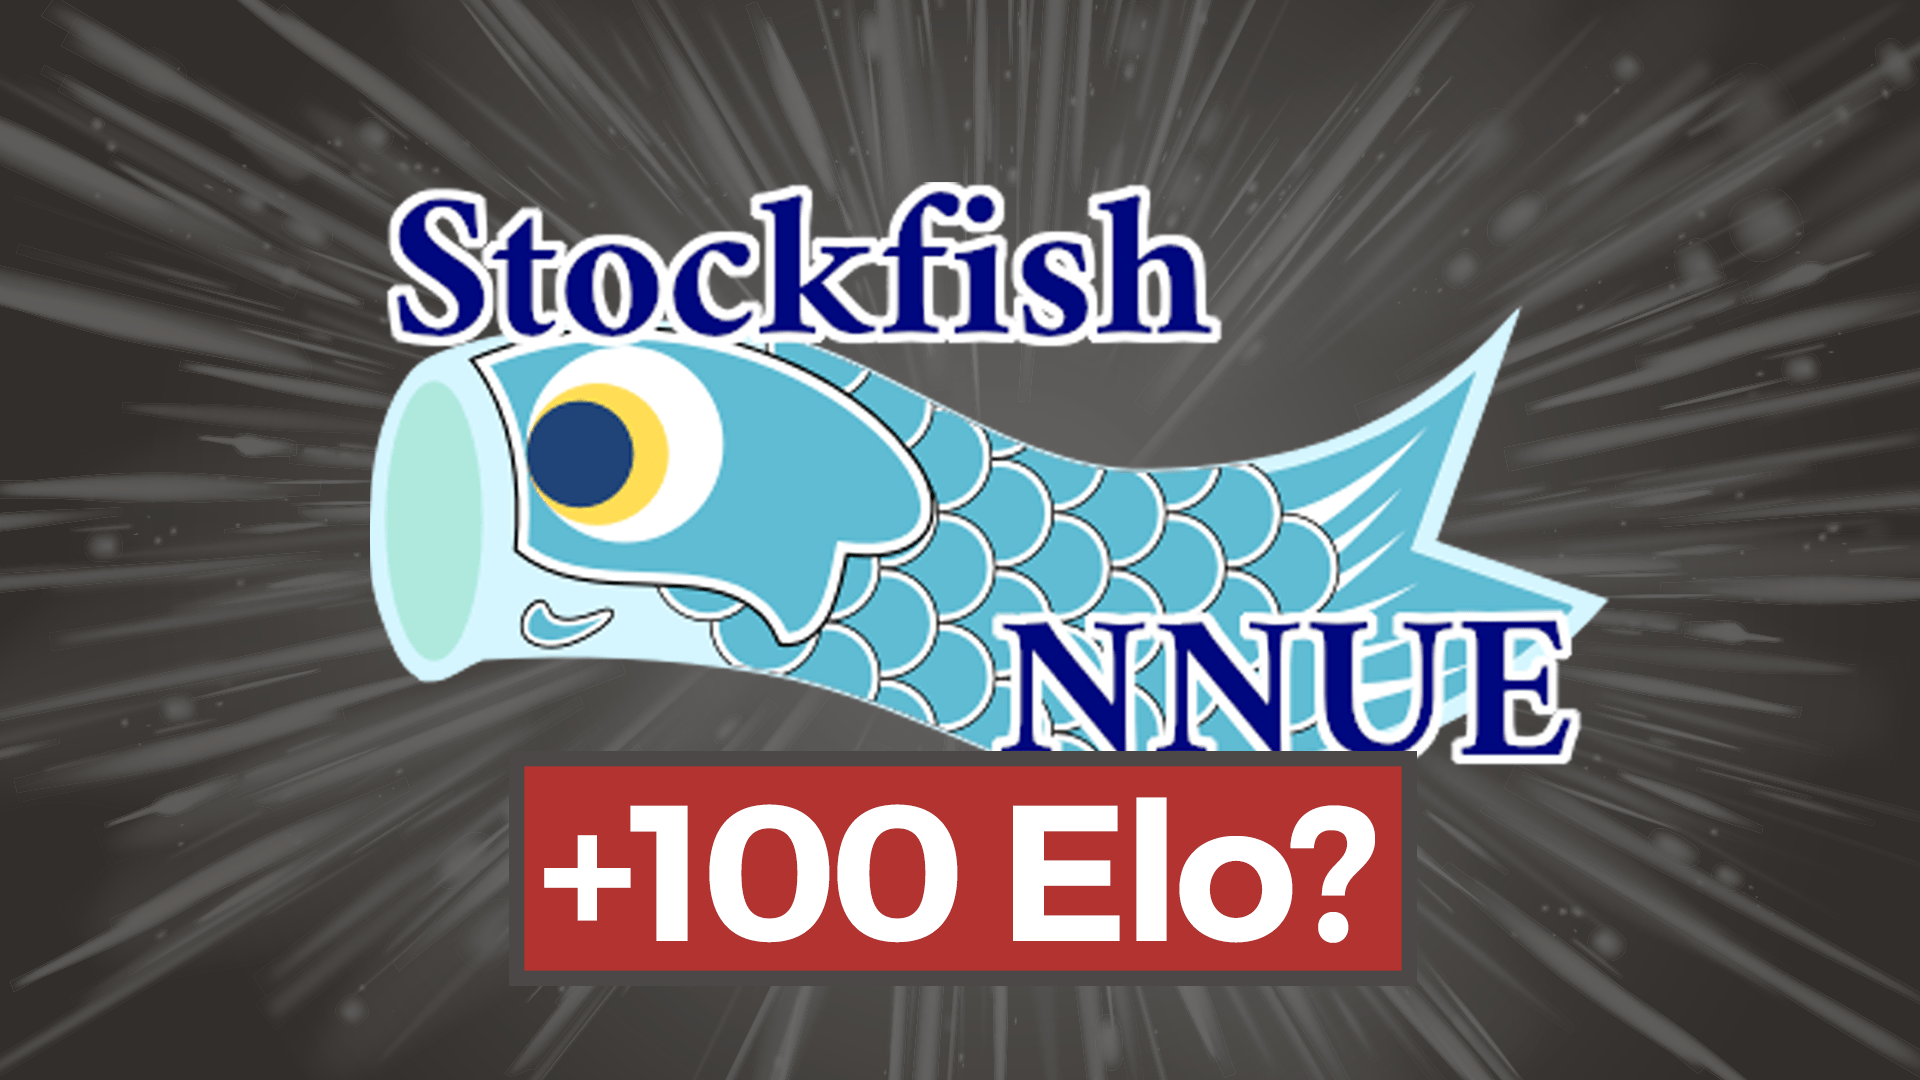 Stockfish • Yoolk • Digital Ninja